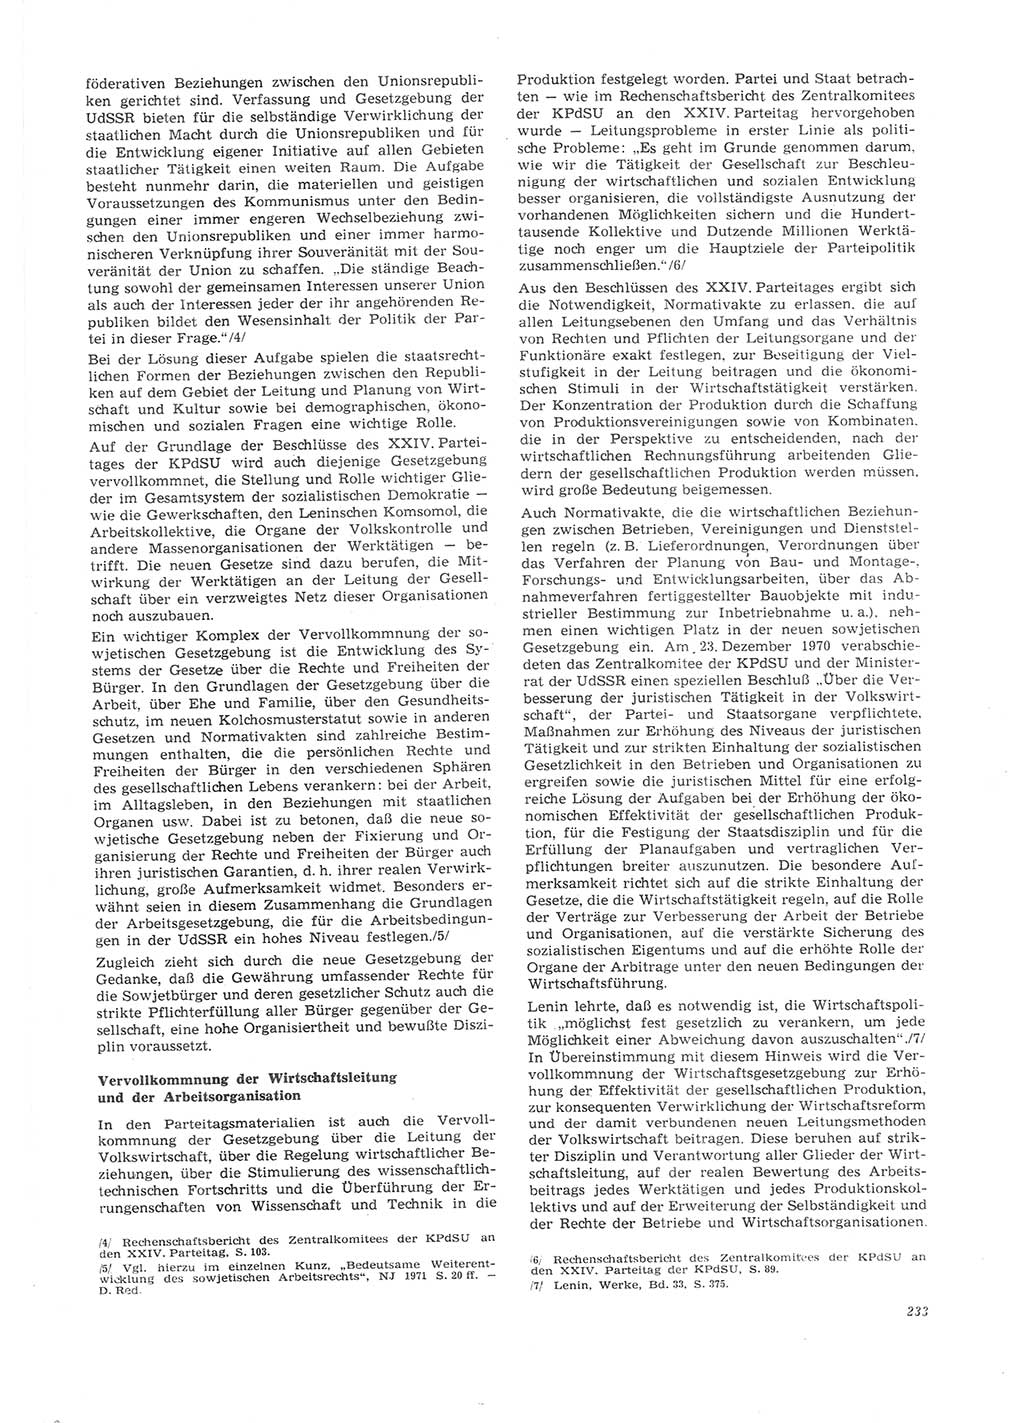 Neue Justiz (NJ), Zeitschrift für Recht und Rechtswissenschaft [Deutsche Demokratische Republik (DDR)], 26. Jahrgang 1972, Seite 233 (NJ DDR 1972, S. 233)